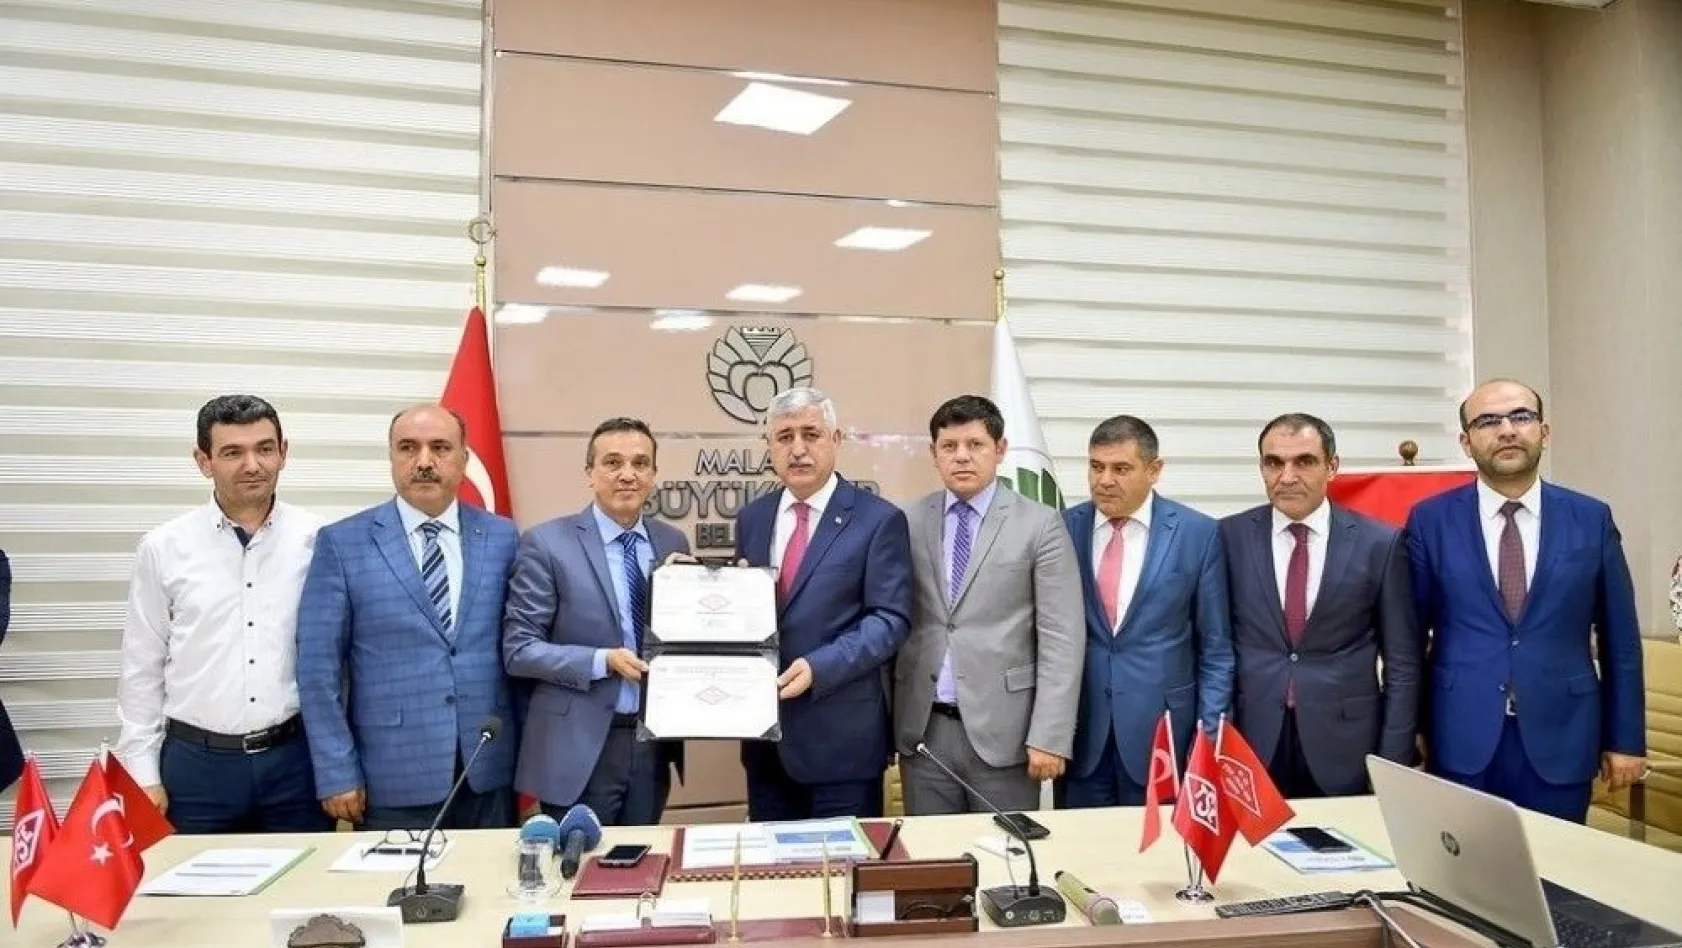 Malatya Büyükşehir Belediyesi'ne TSE'den bir belge daha
